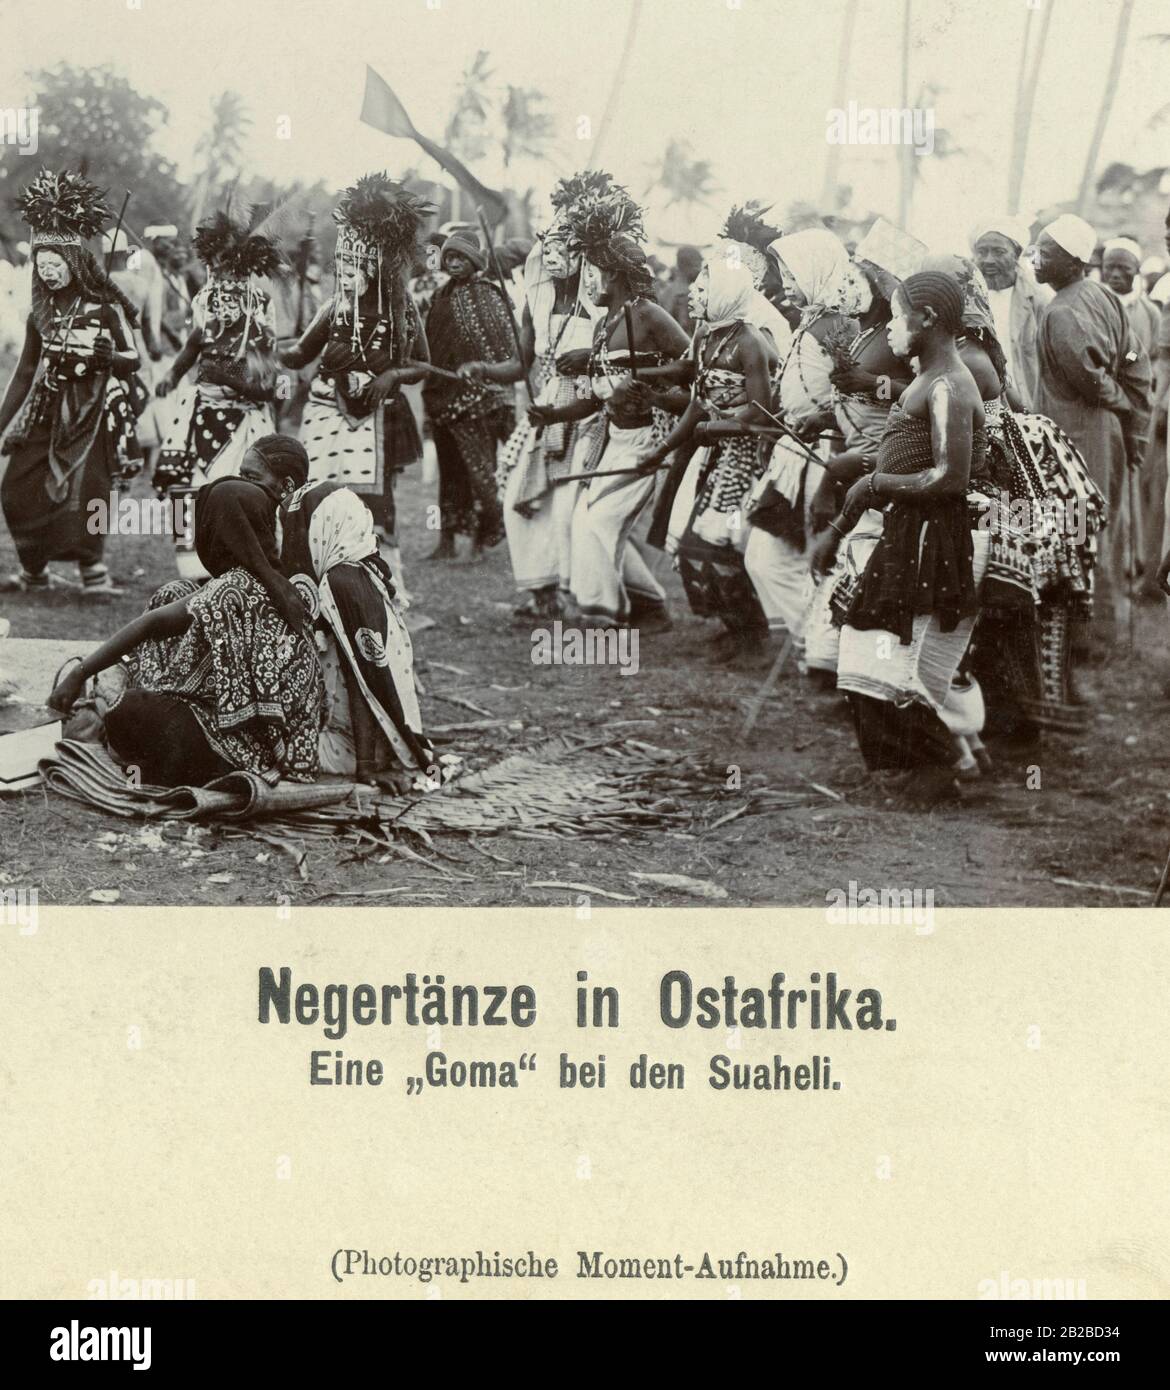 Swahili, Bewohner der Ostküste Afrikas, während ihres traditionellen Tanzes. Das weiße Gesichtsgemälde galt derzeit als Versuch, "nach außen" ähnlich zu den weißen Kolonialherren zu werden. Stockfoto